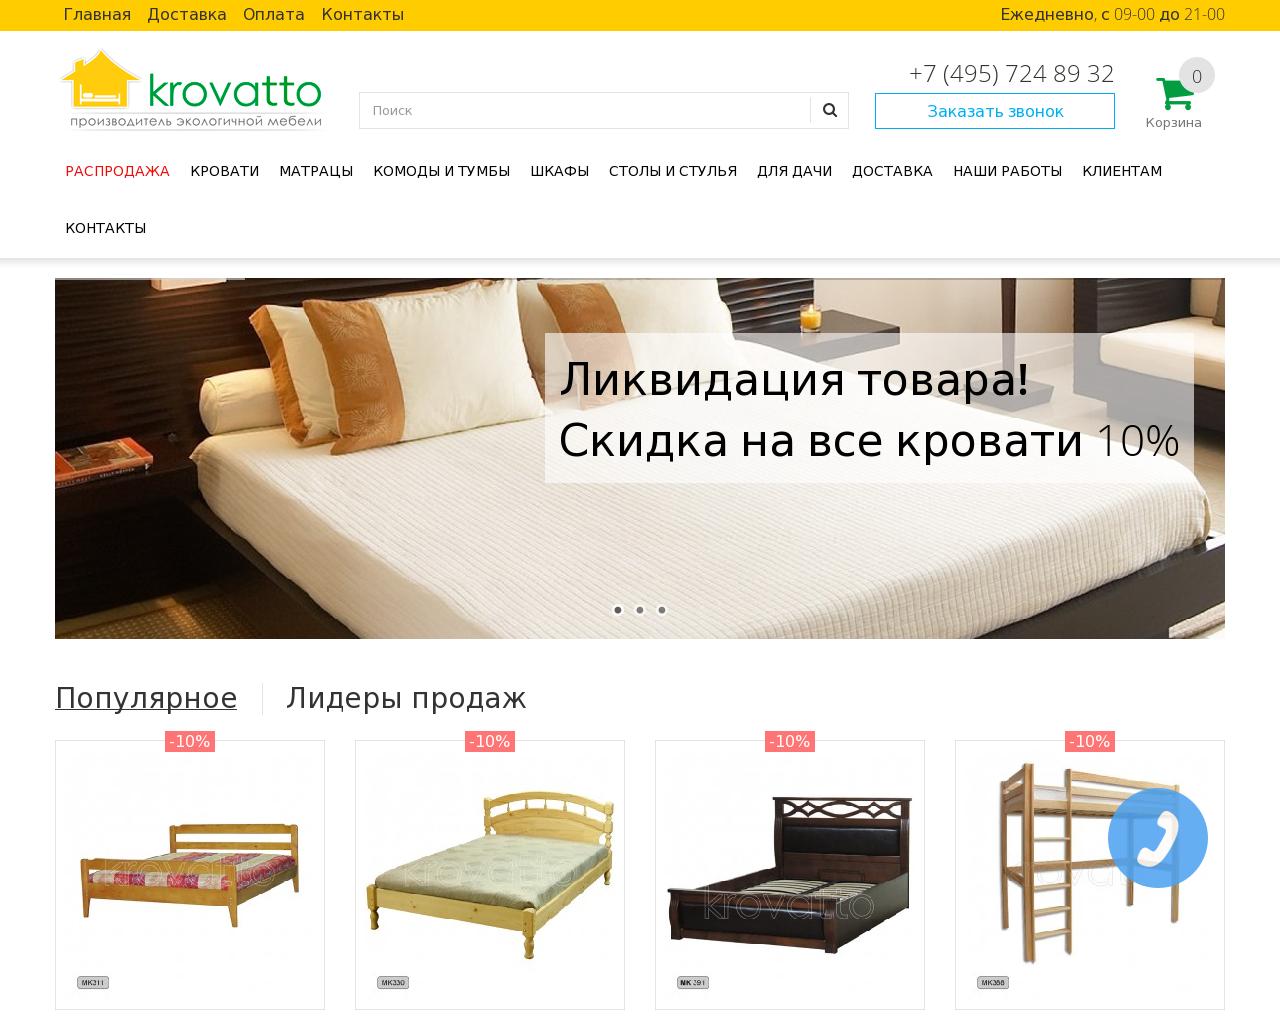 Изображение сайта krovatto.ru в разрешении 1280x1024